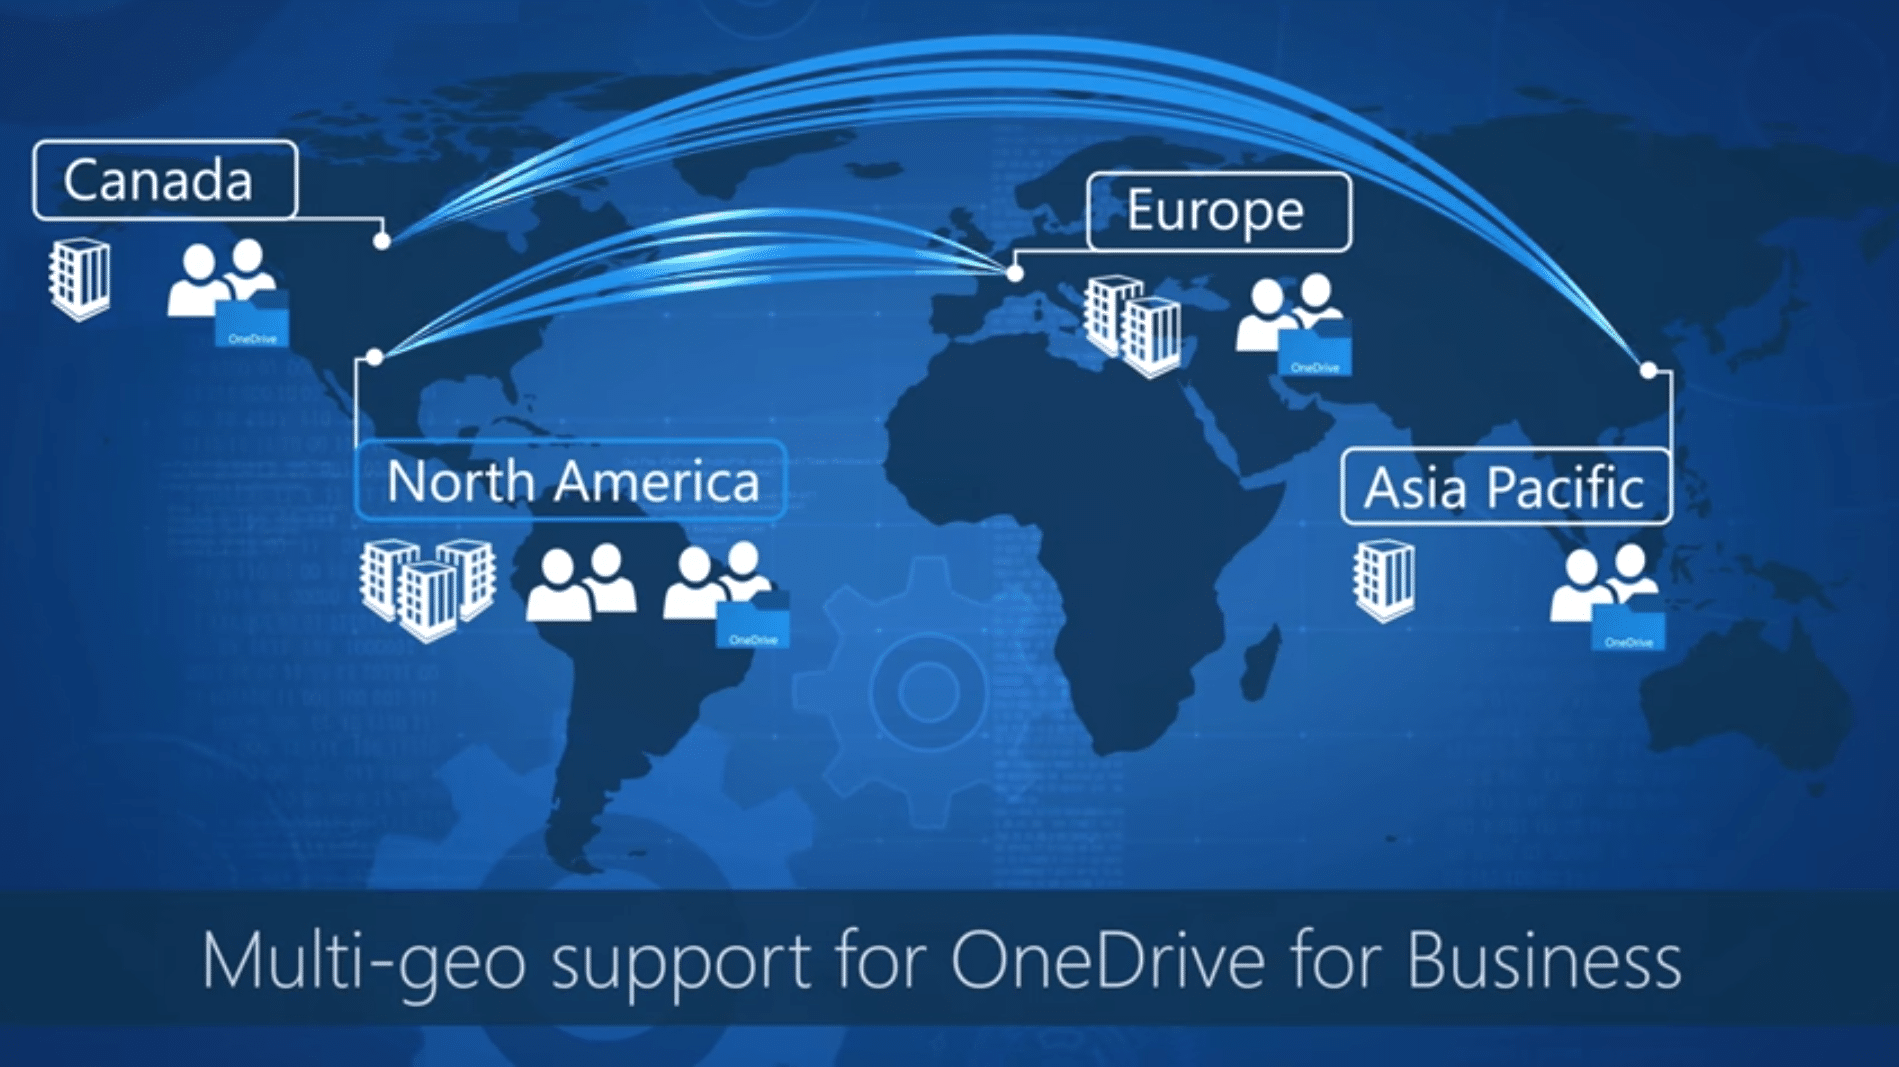 Multi geo support pour gérer emplacements de stockages Onedrive Entreprise Office 365